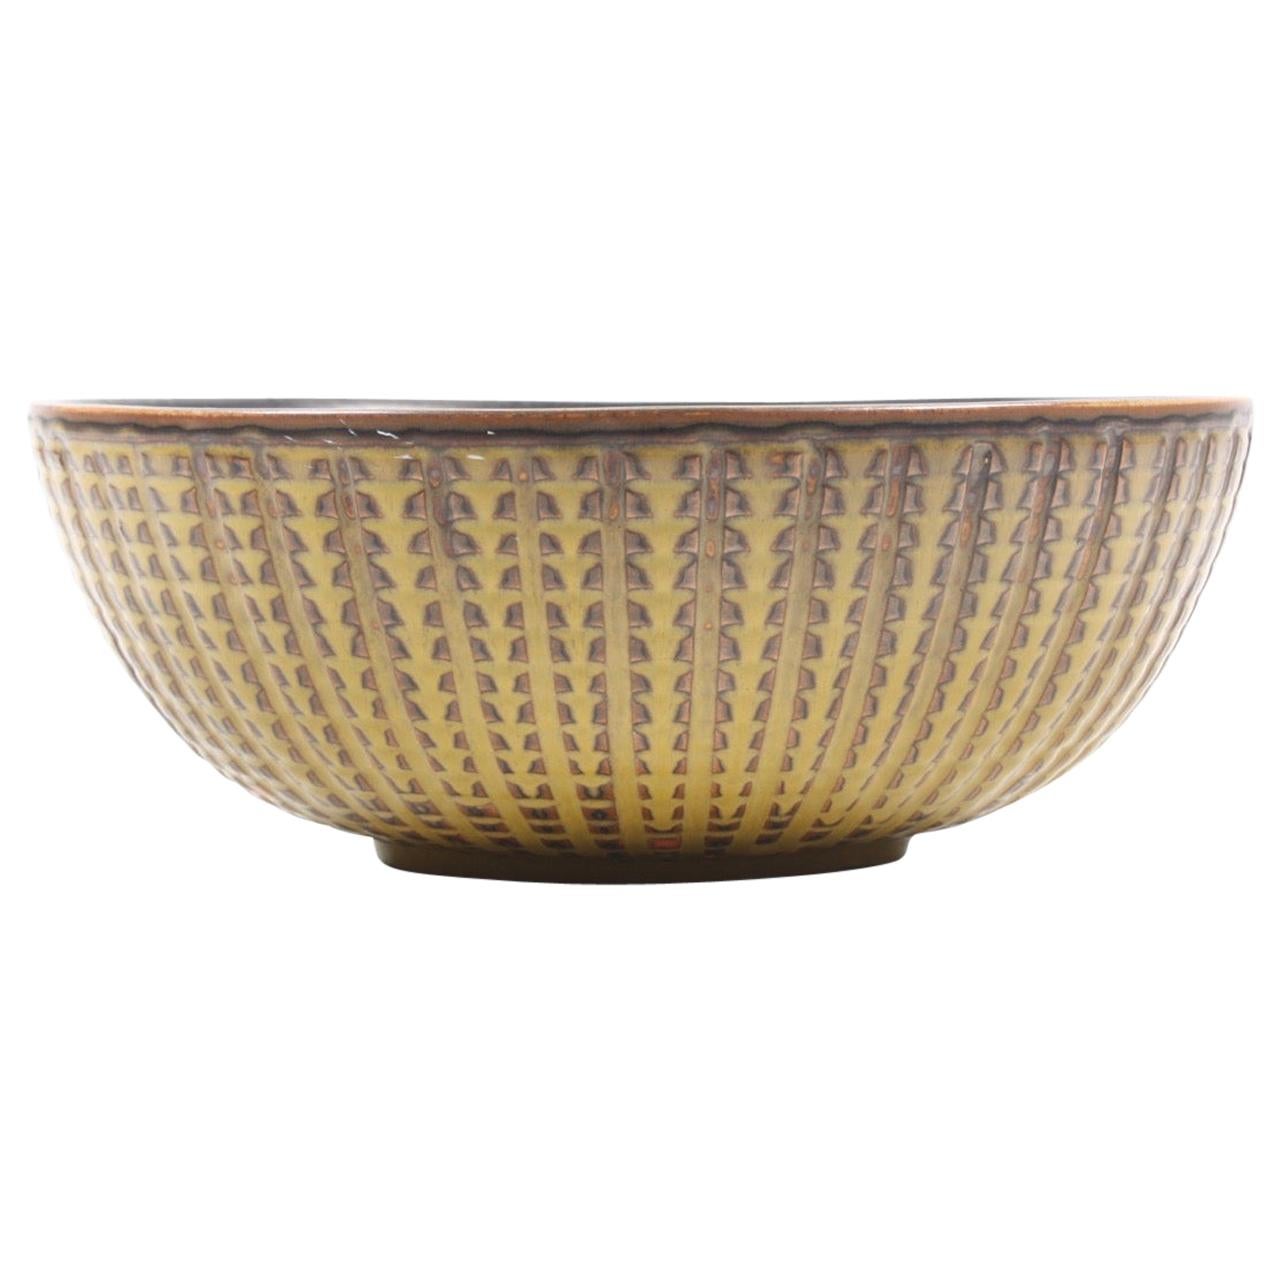 Unique Bowl Design by Carl Halier for Royal Copenhagen For Sale